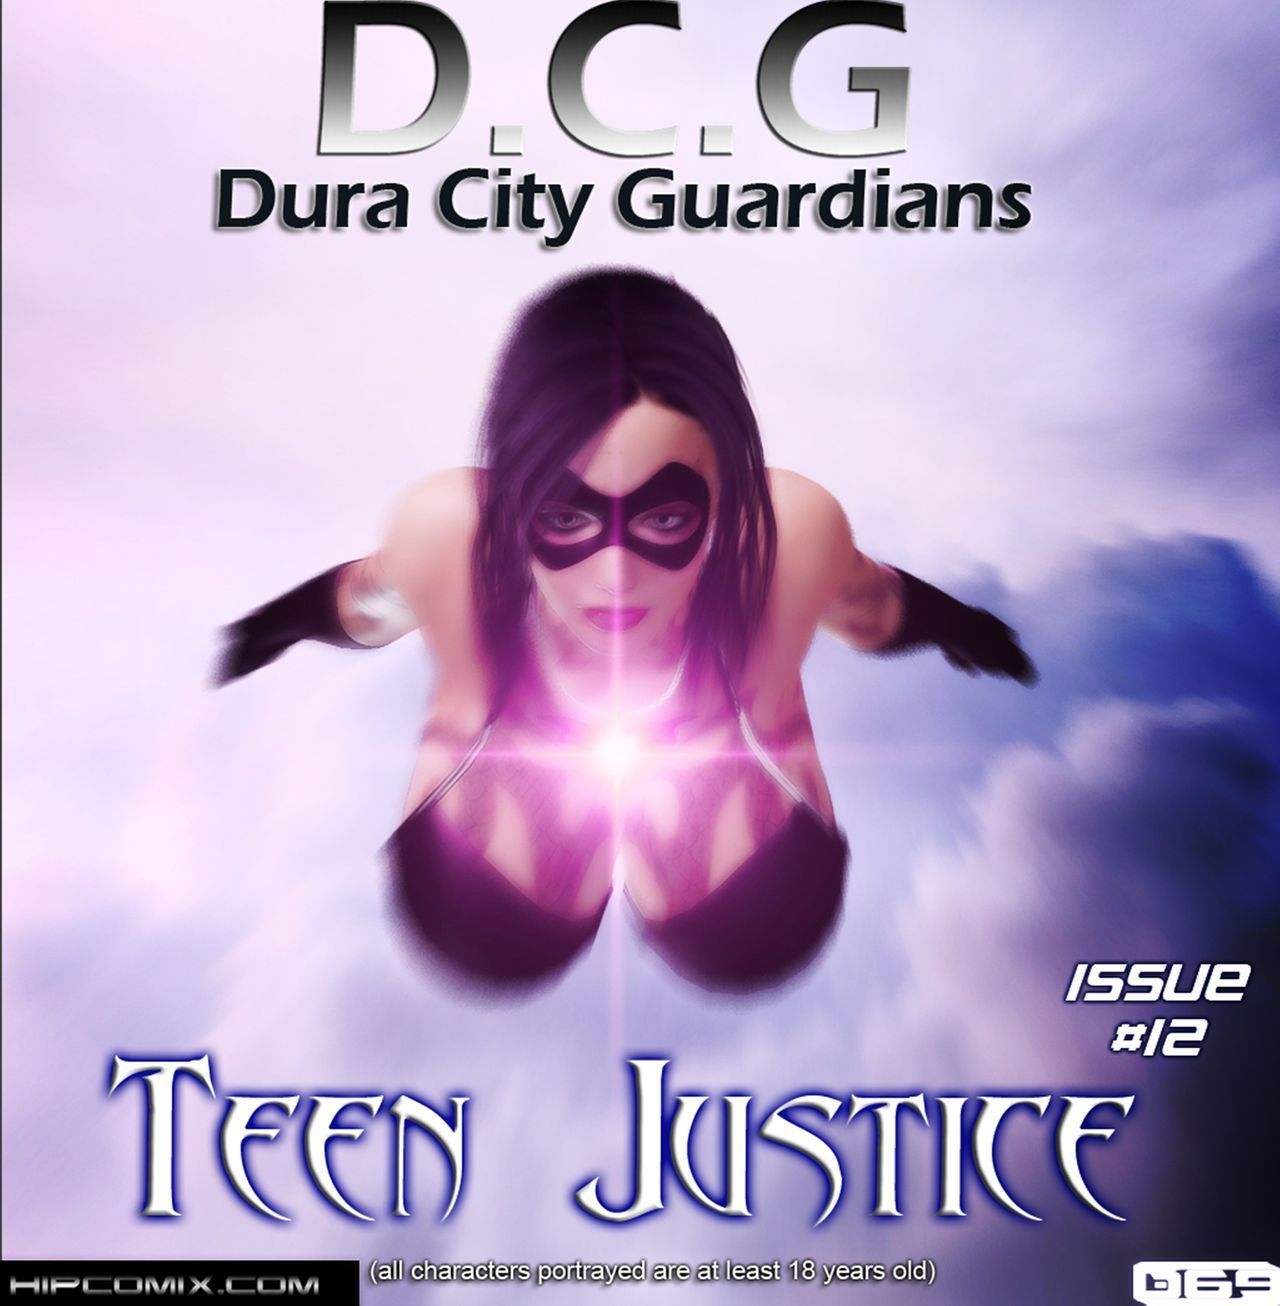 dura ciudad tutores - adolescente La justicia - capítulo 1-22 - Parte 7